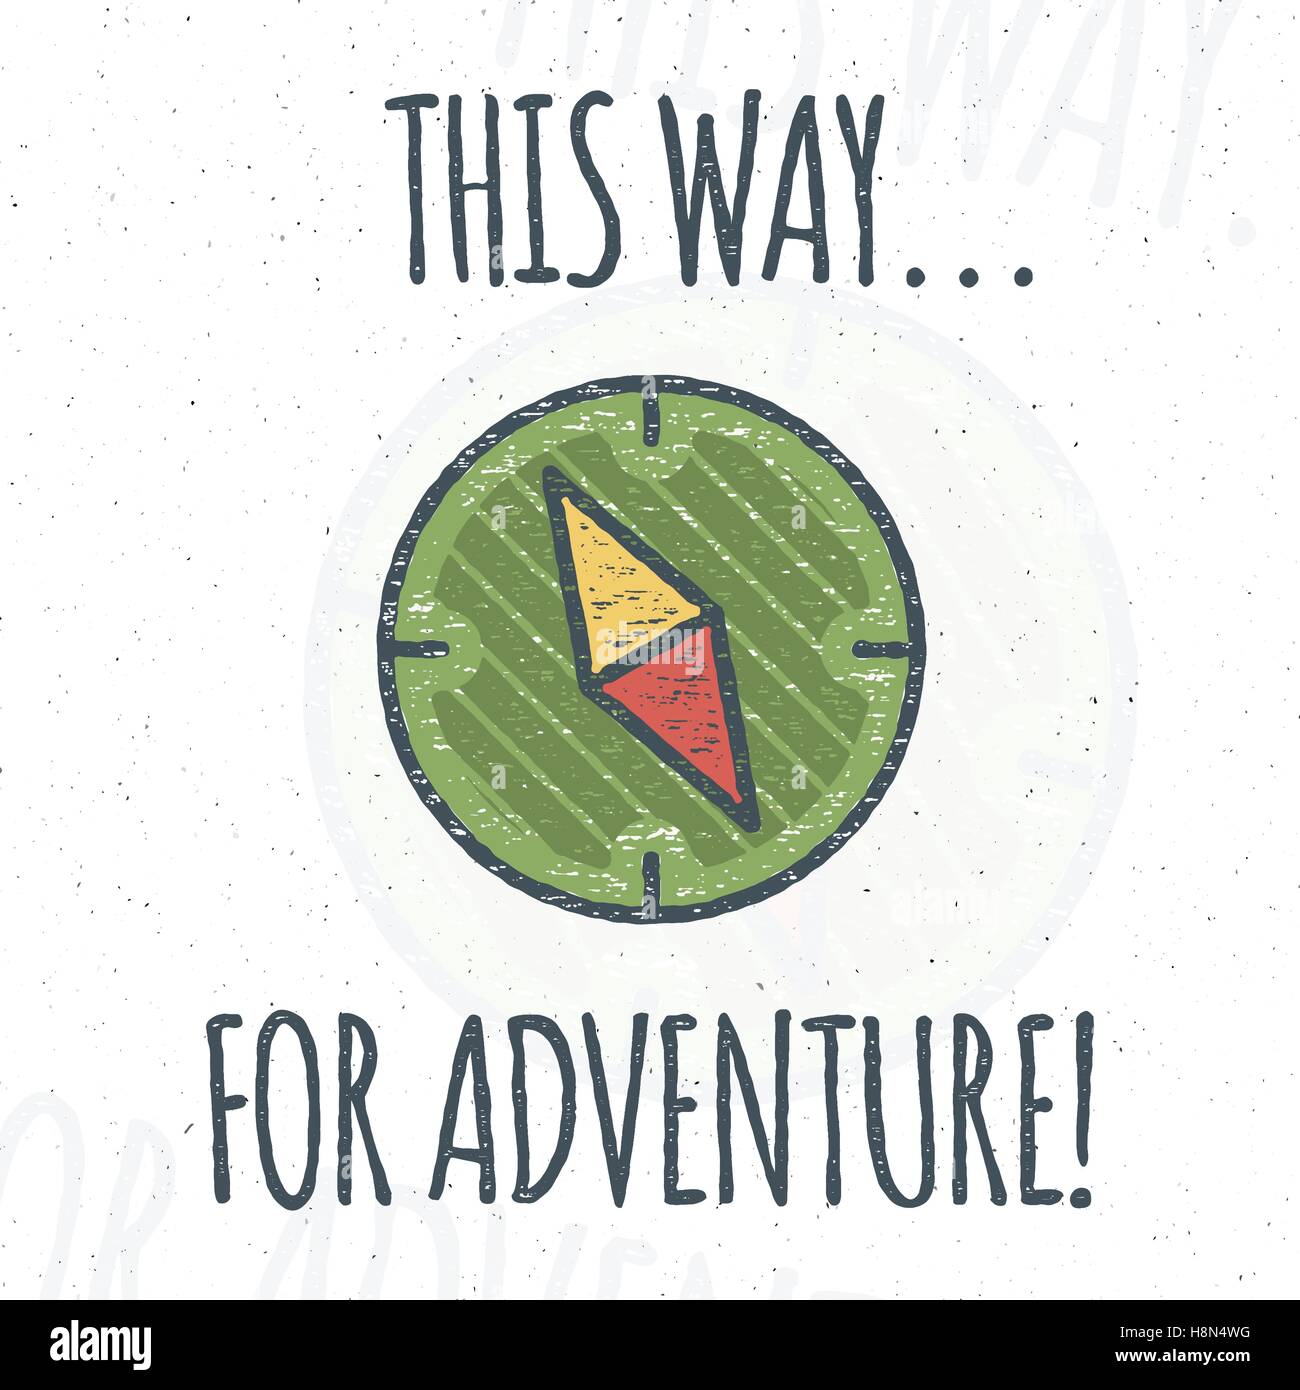 pequeño Mono vanidad Camping diseño de logotipo con tipografía y elementos de viaje - brújula.  Texto vectorial - esta es una forma de aventura. Sendero de trekking,  campismo símbolos en retro de colores planos. Agradable